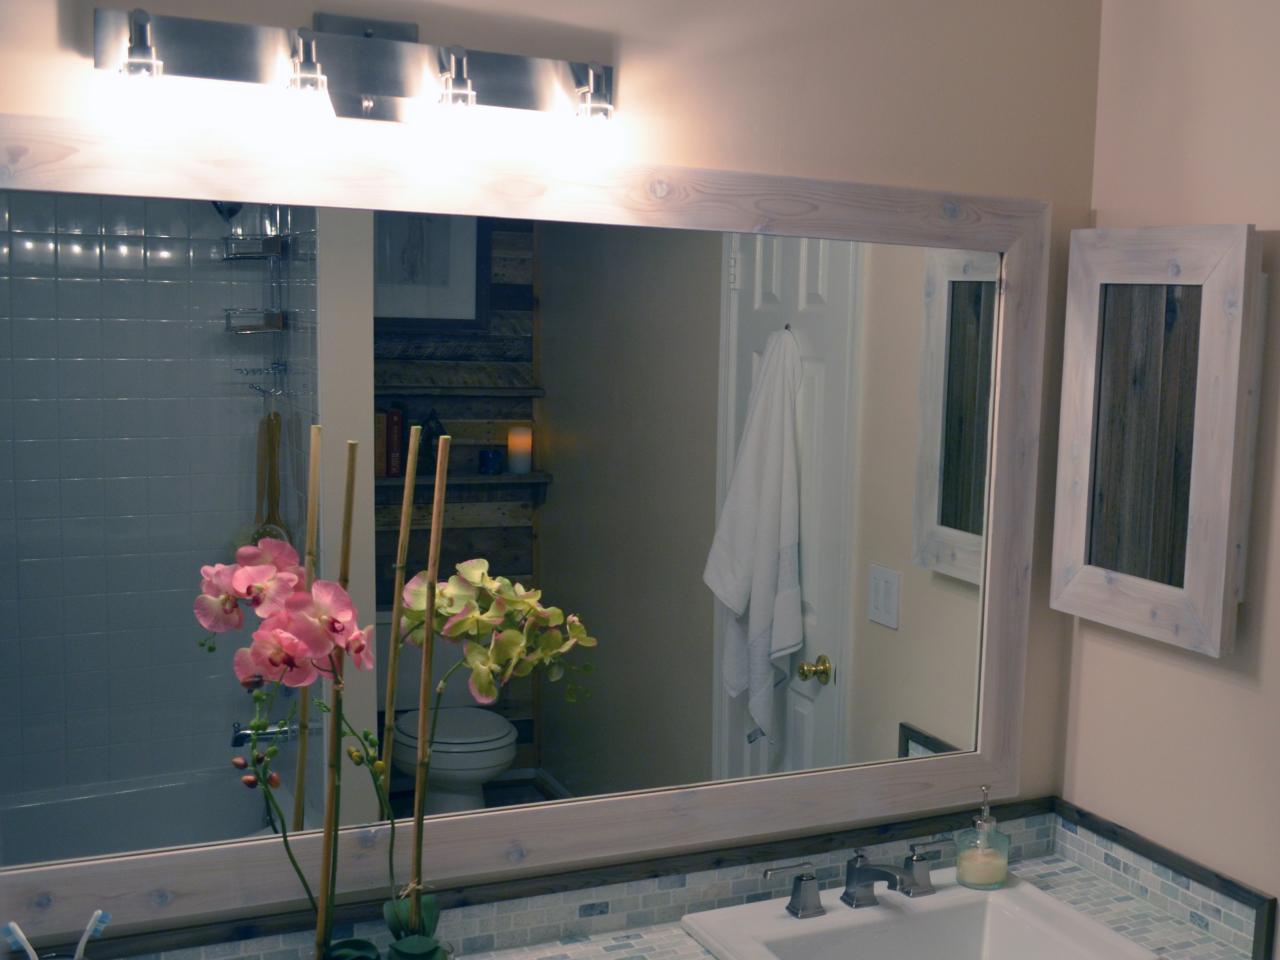 How To Replace A Bathroom Light Fixture How Tos Diy